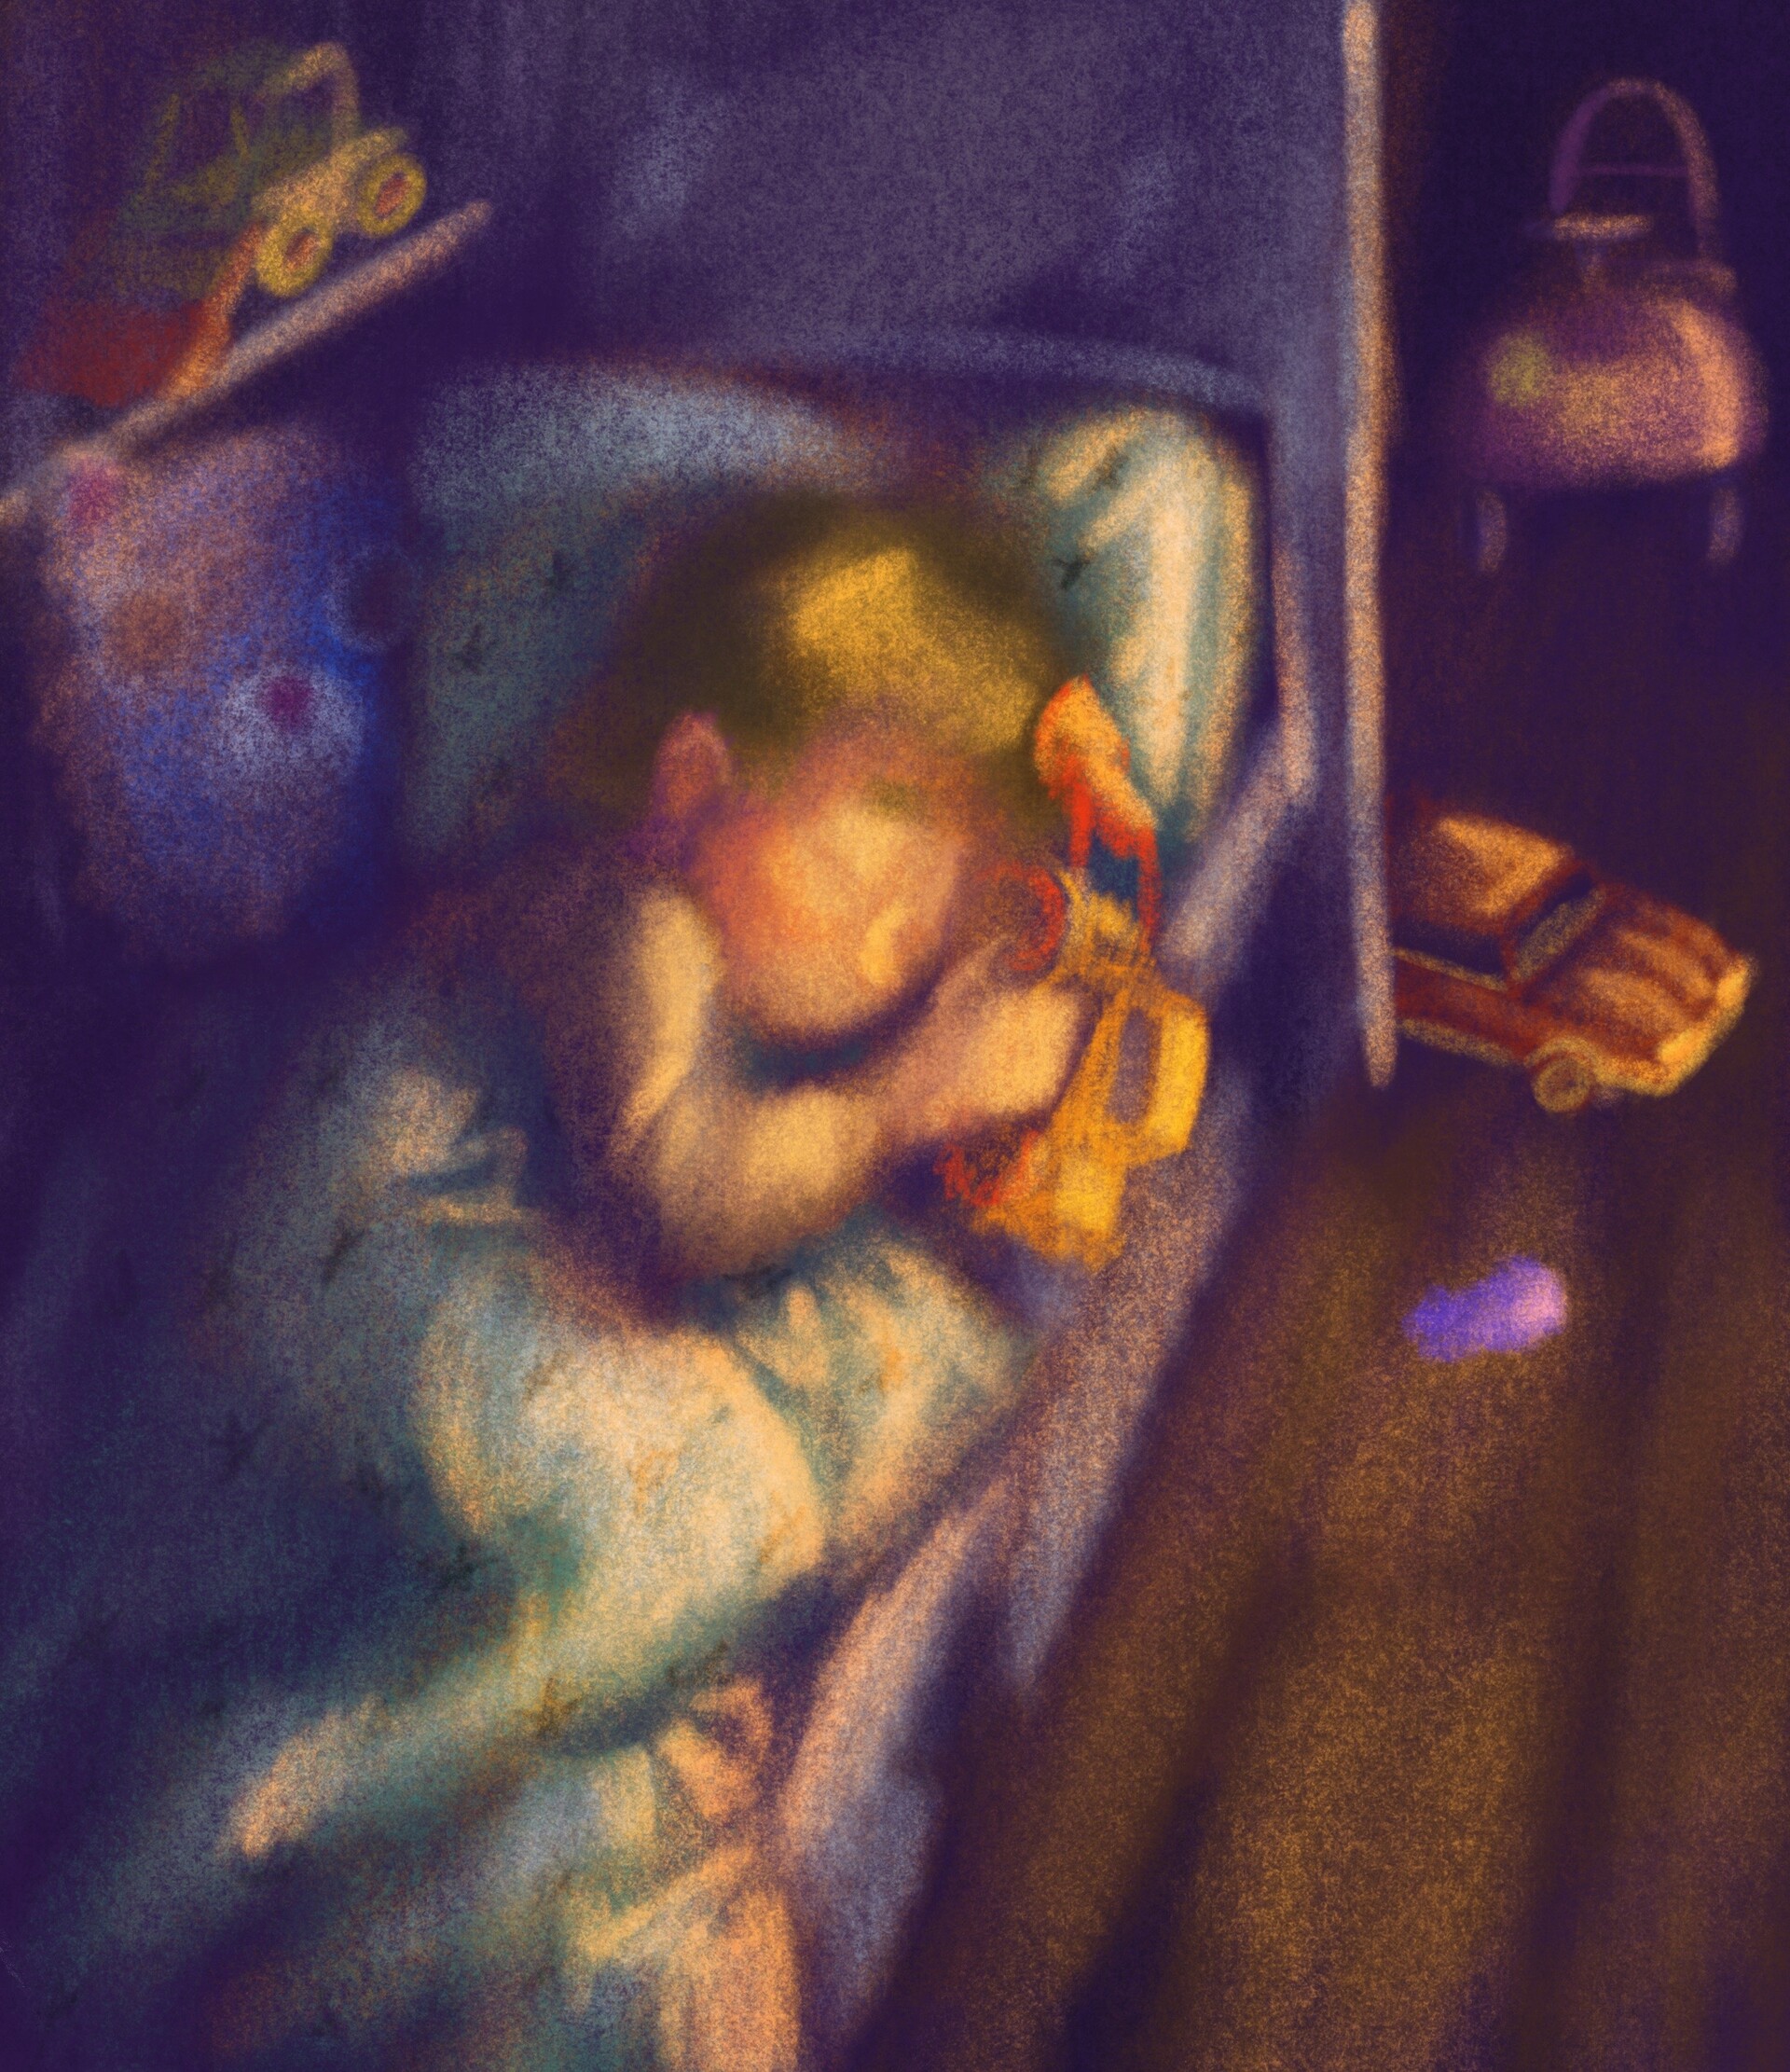 ArtStation - Boy sleeping with toy car